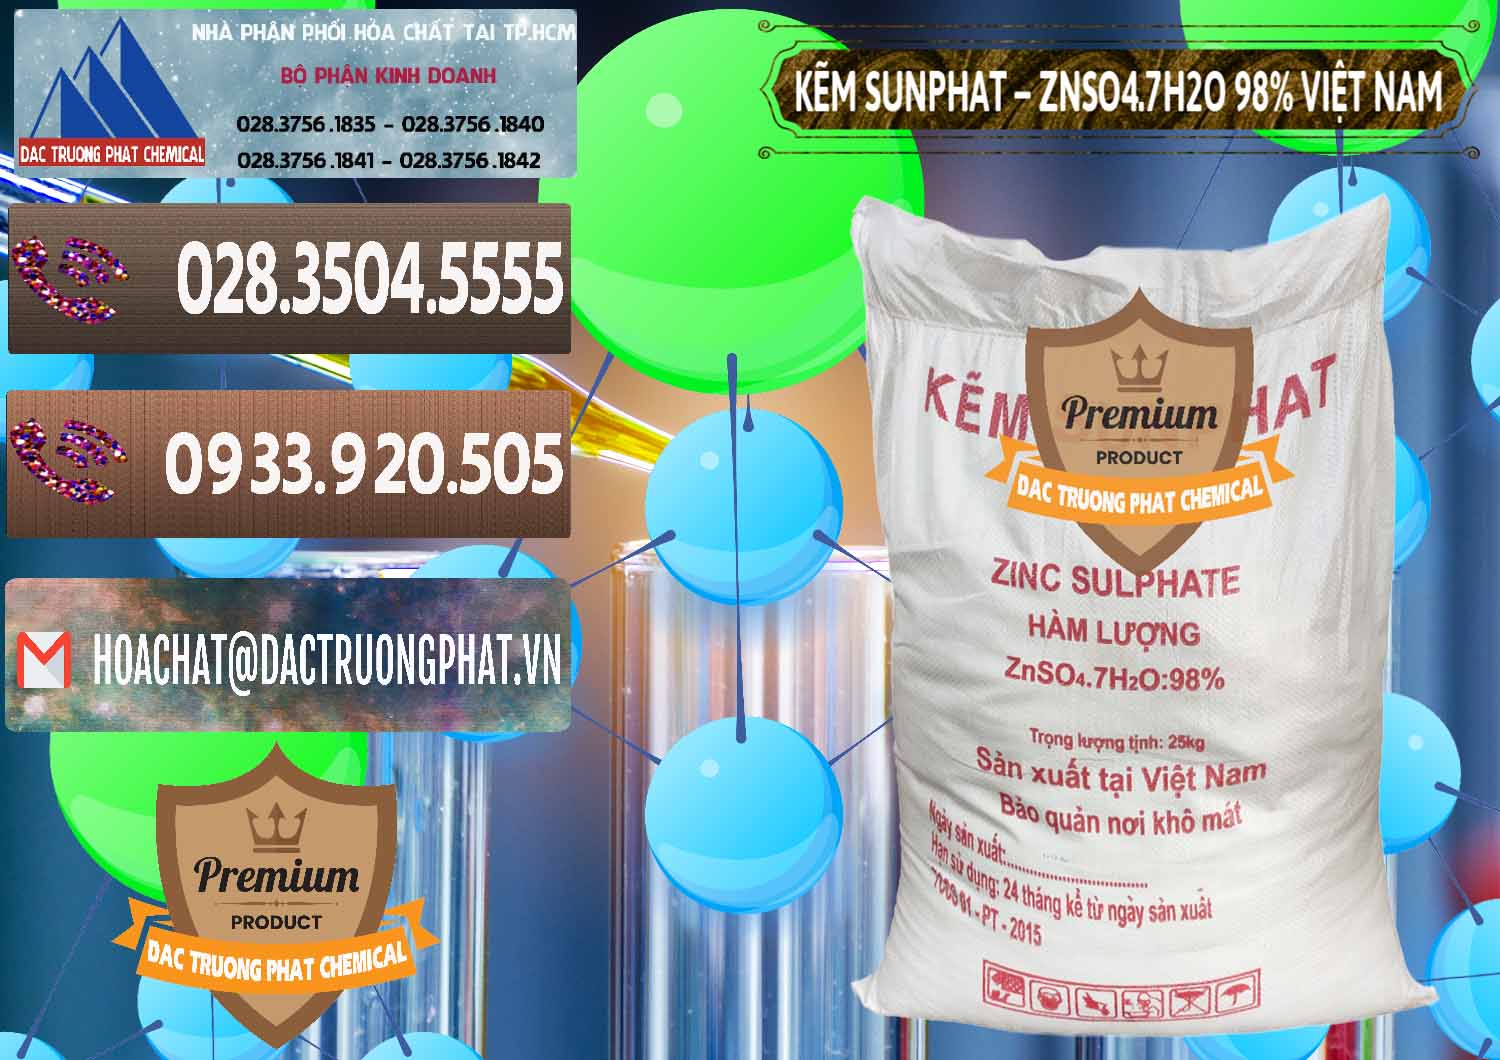 Cty chuyên bán - cung ứng Kẽm Sunfat – ZNSO4.7H2O Việt Nam - 0189 - Công ty cung cấp và phân phối hóa chất tại TP.HCM - hoachatviet.net